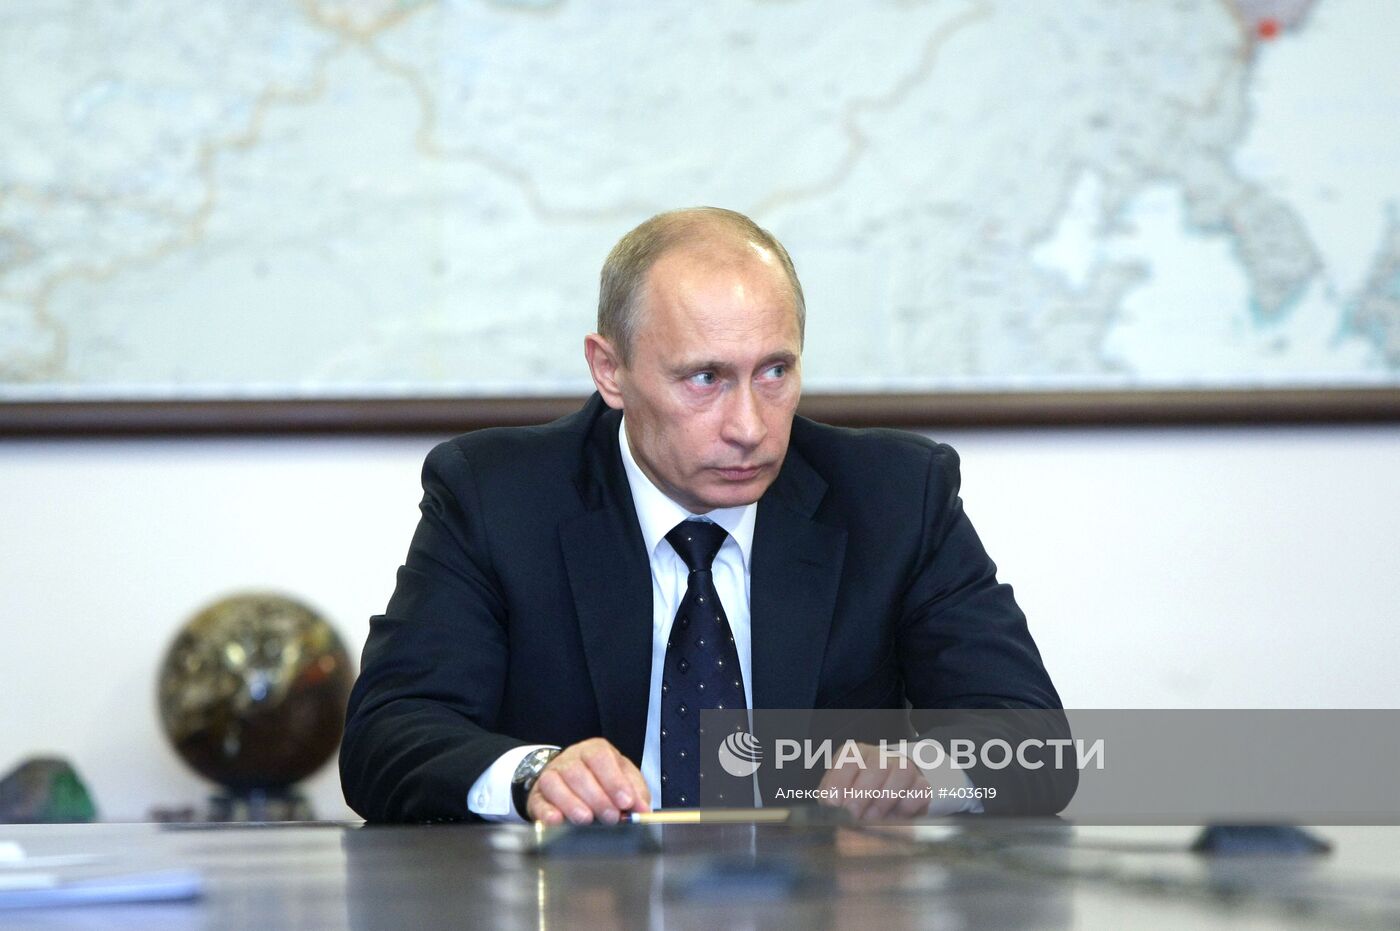 В.Путин посетил Госкомиссию по запасам полезных ископаемых